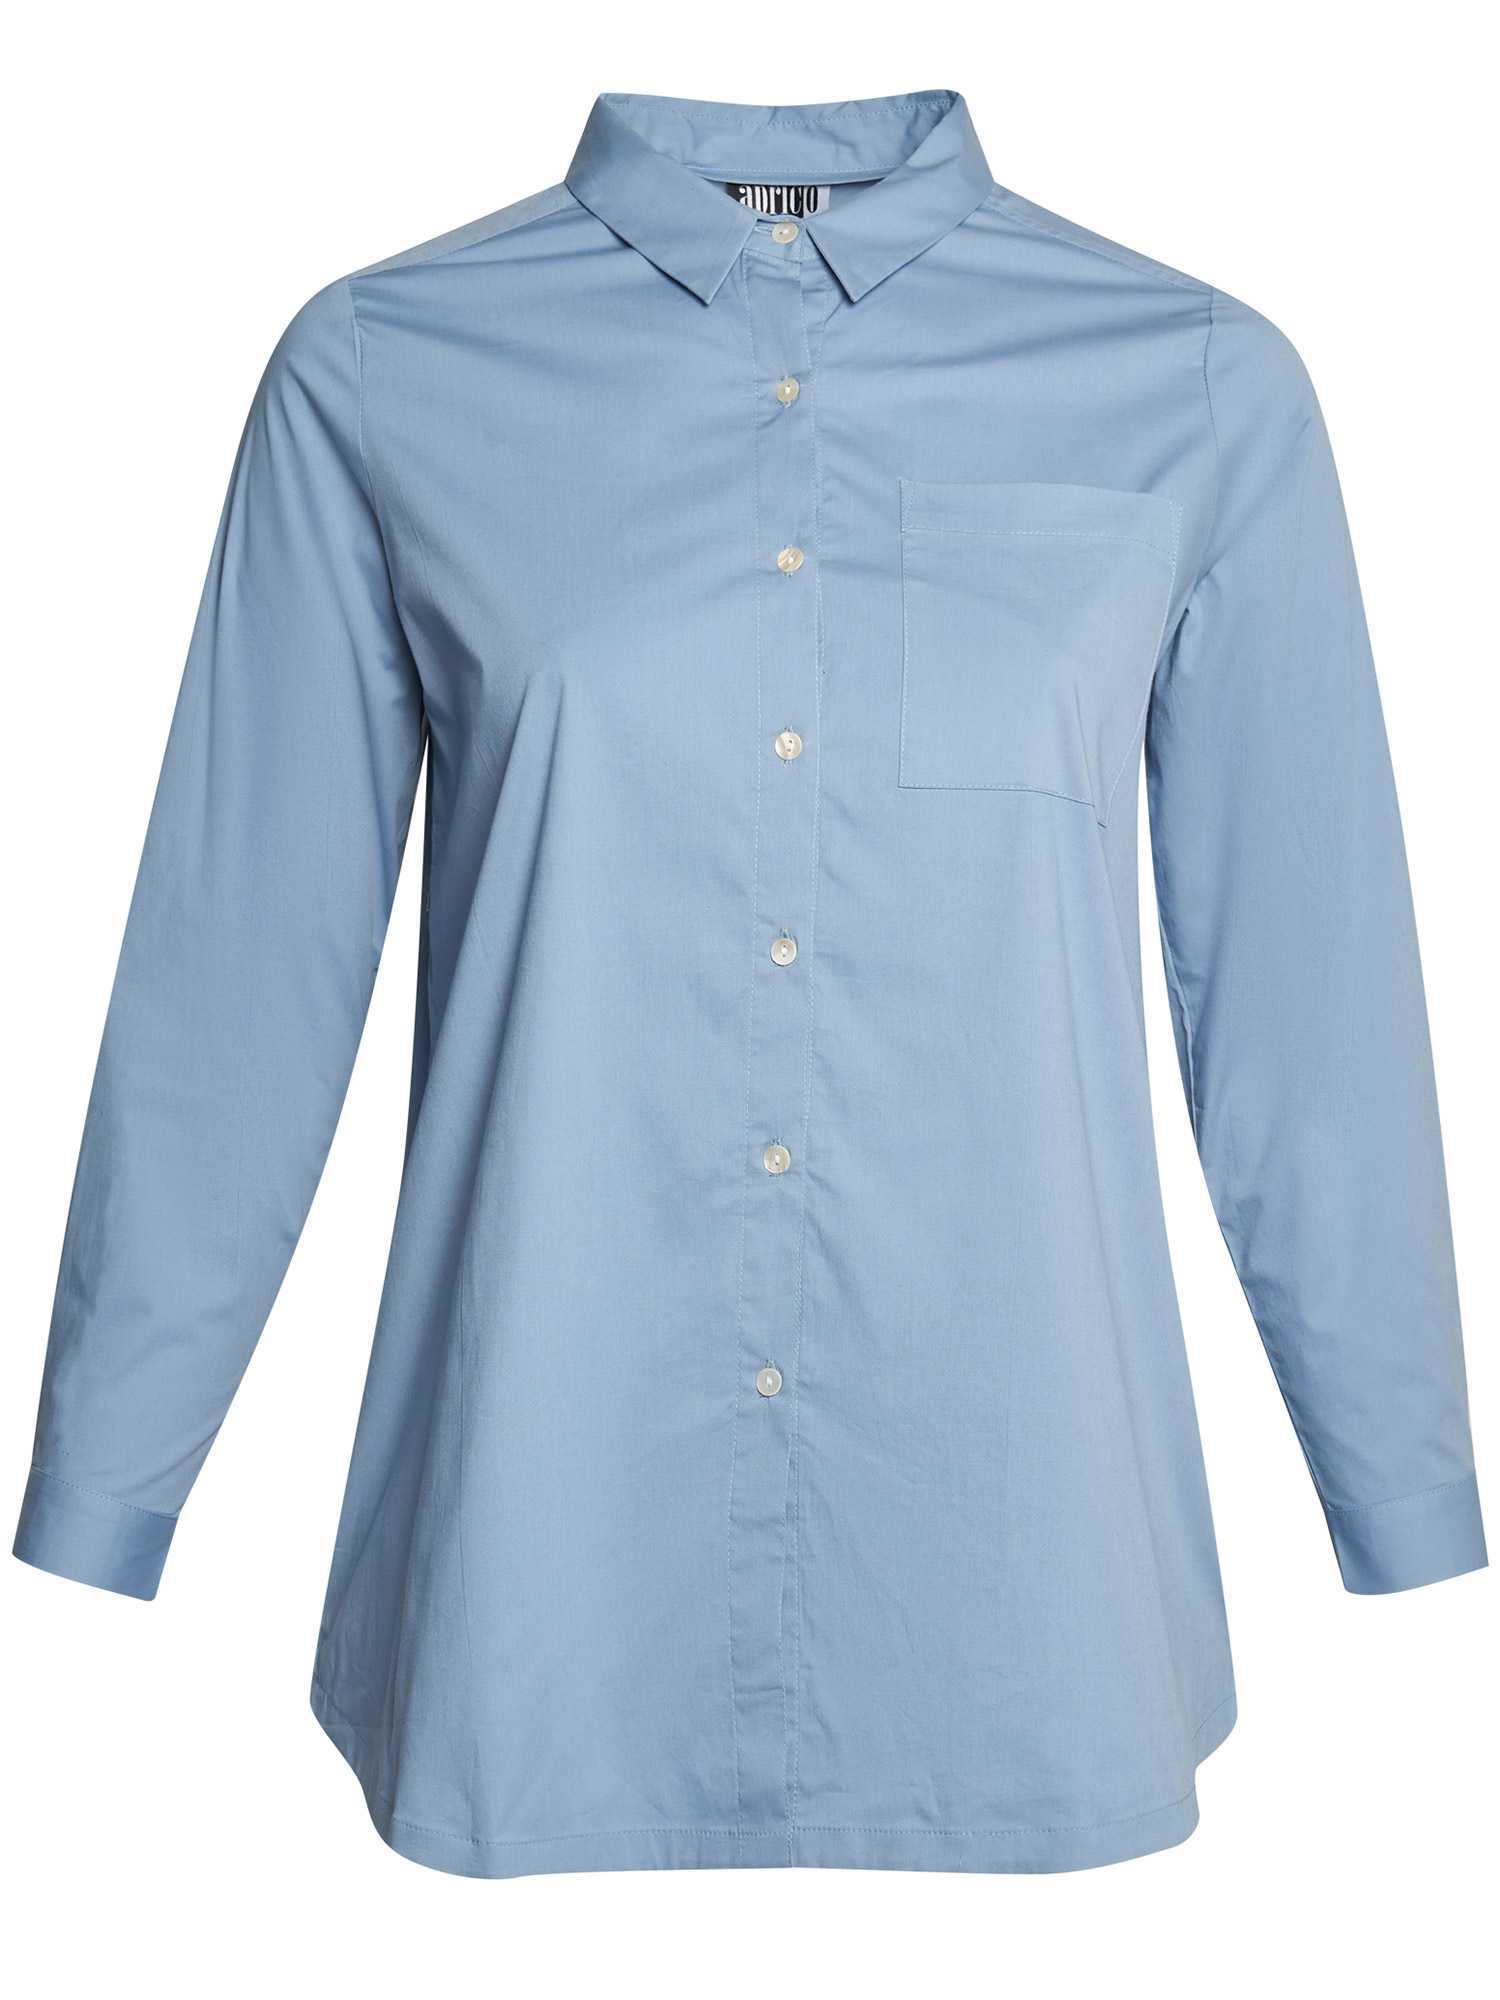 Virginia - Ljusblå skjorta i bomull fra Aprico